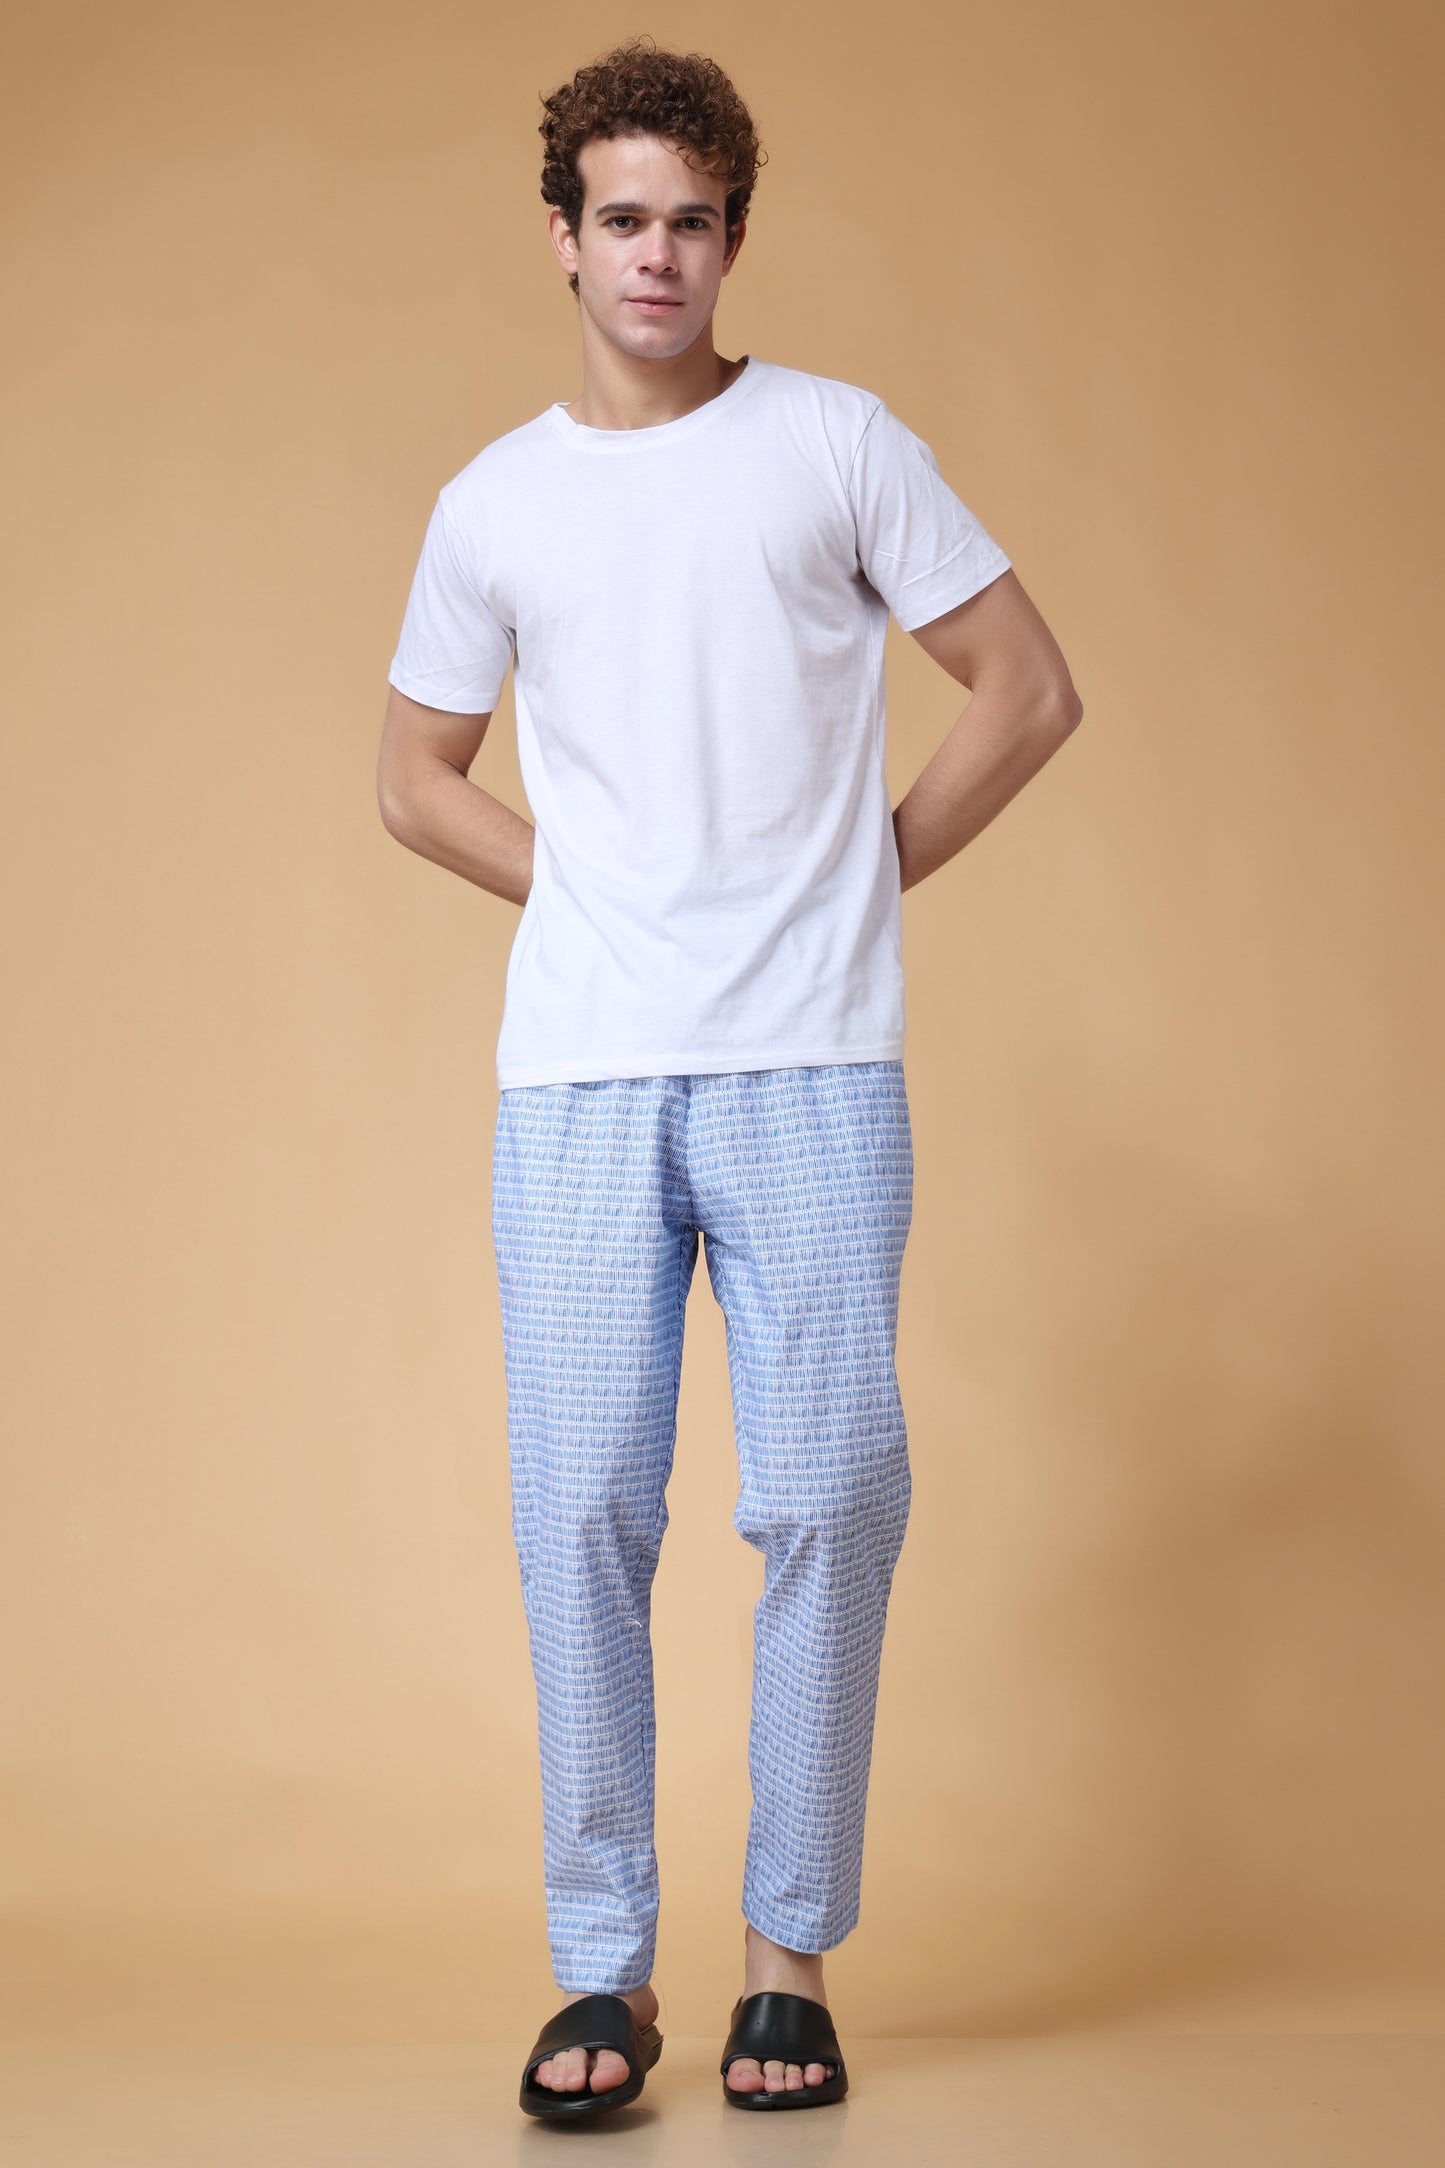 Blue Printed Cotton Pant Pajama